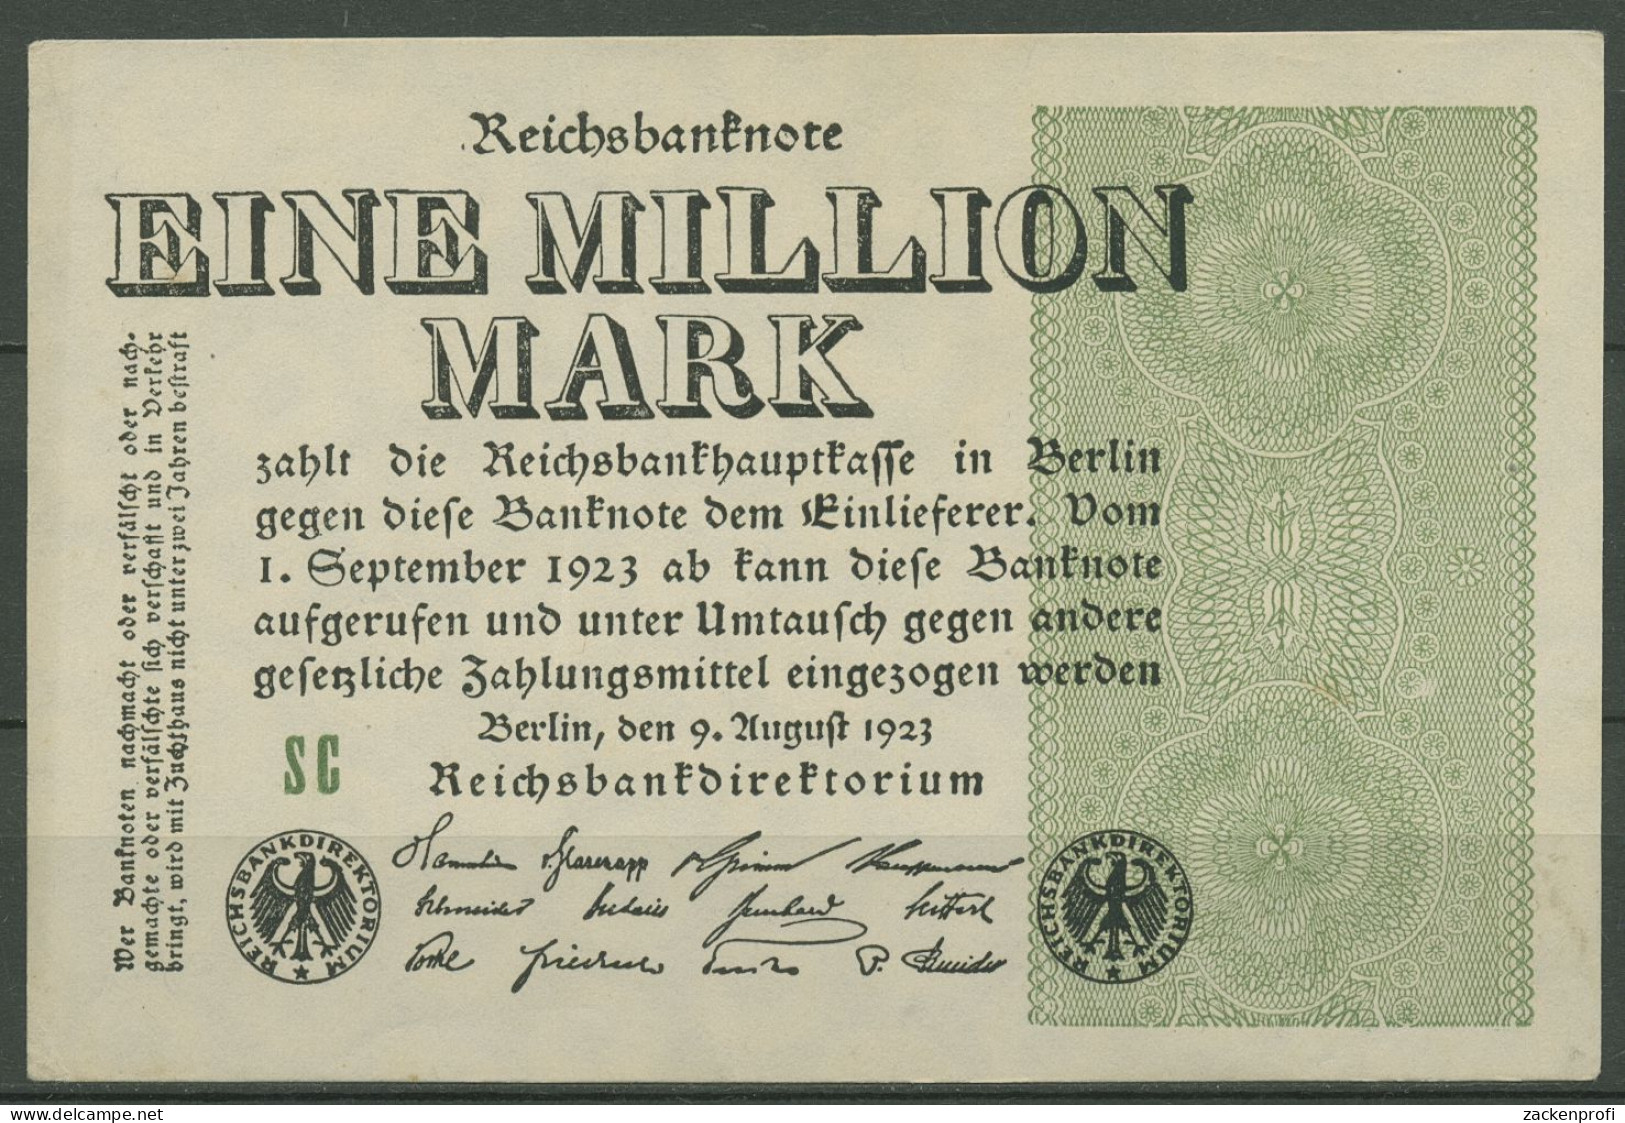 Dt. Reich 1 Million Mark 1923, DEU-114c FZ SC, Leicht Gebraucht (K1278) - 1 Miljoen Mark